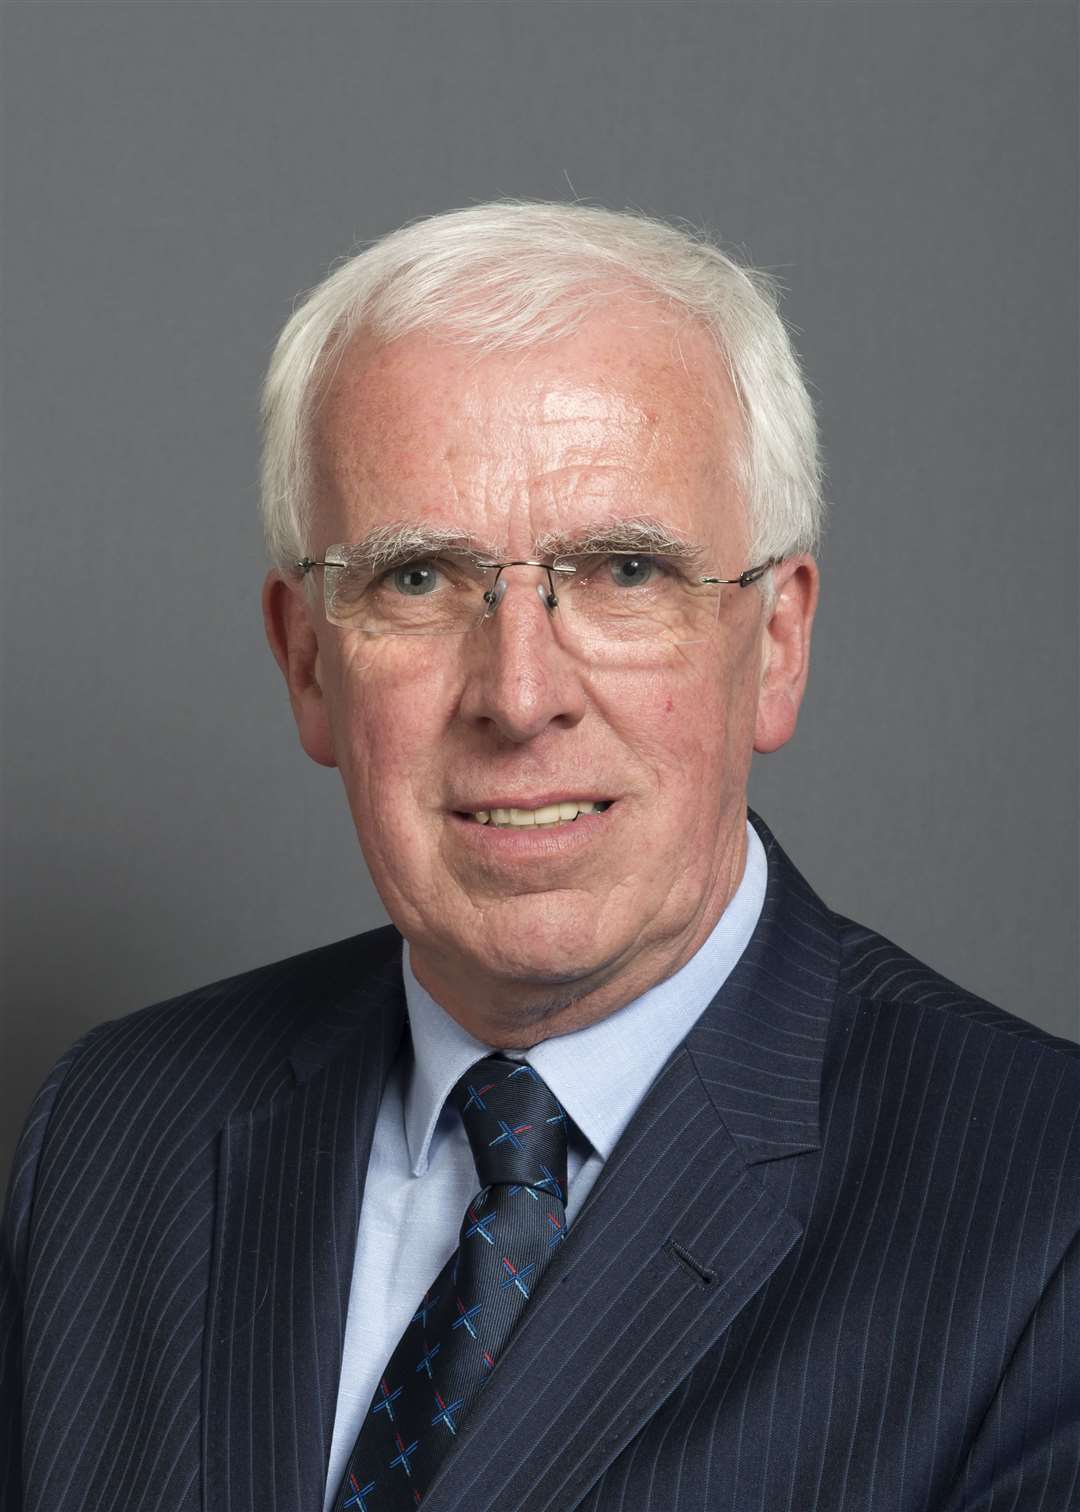 Council leader Jim Gifford